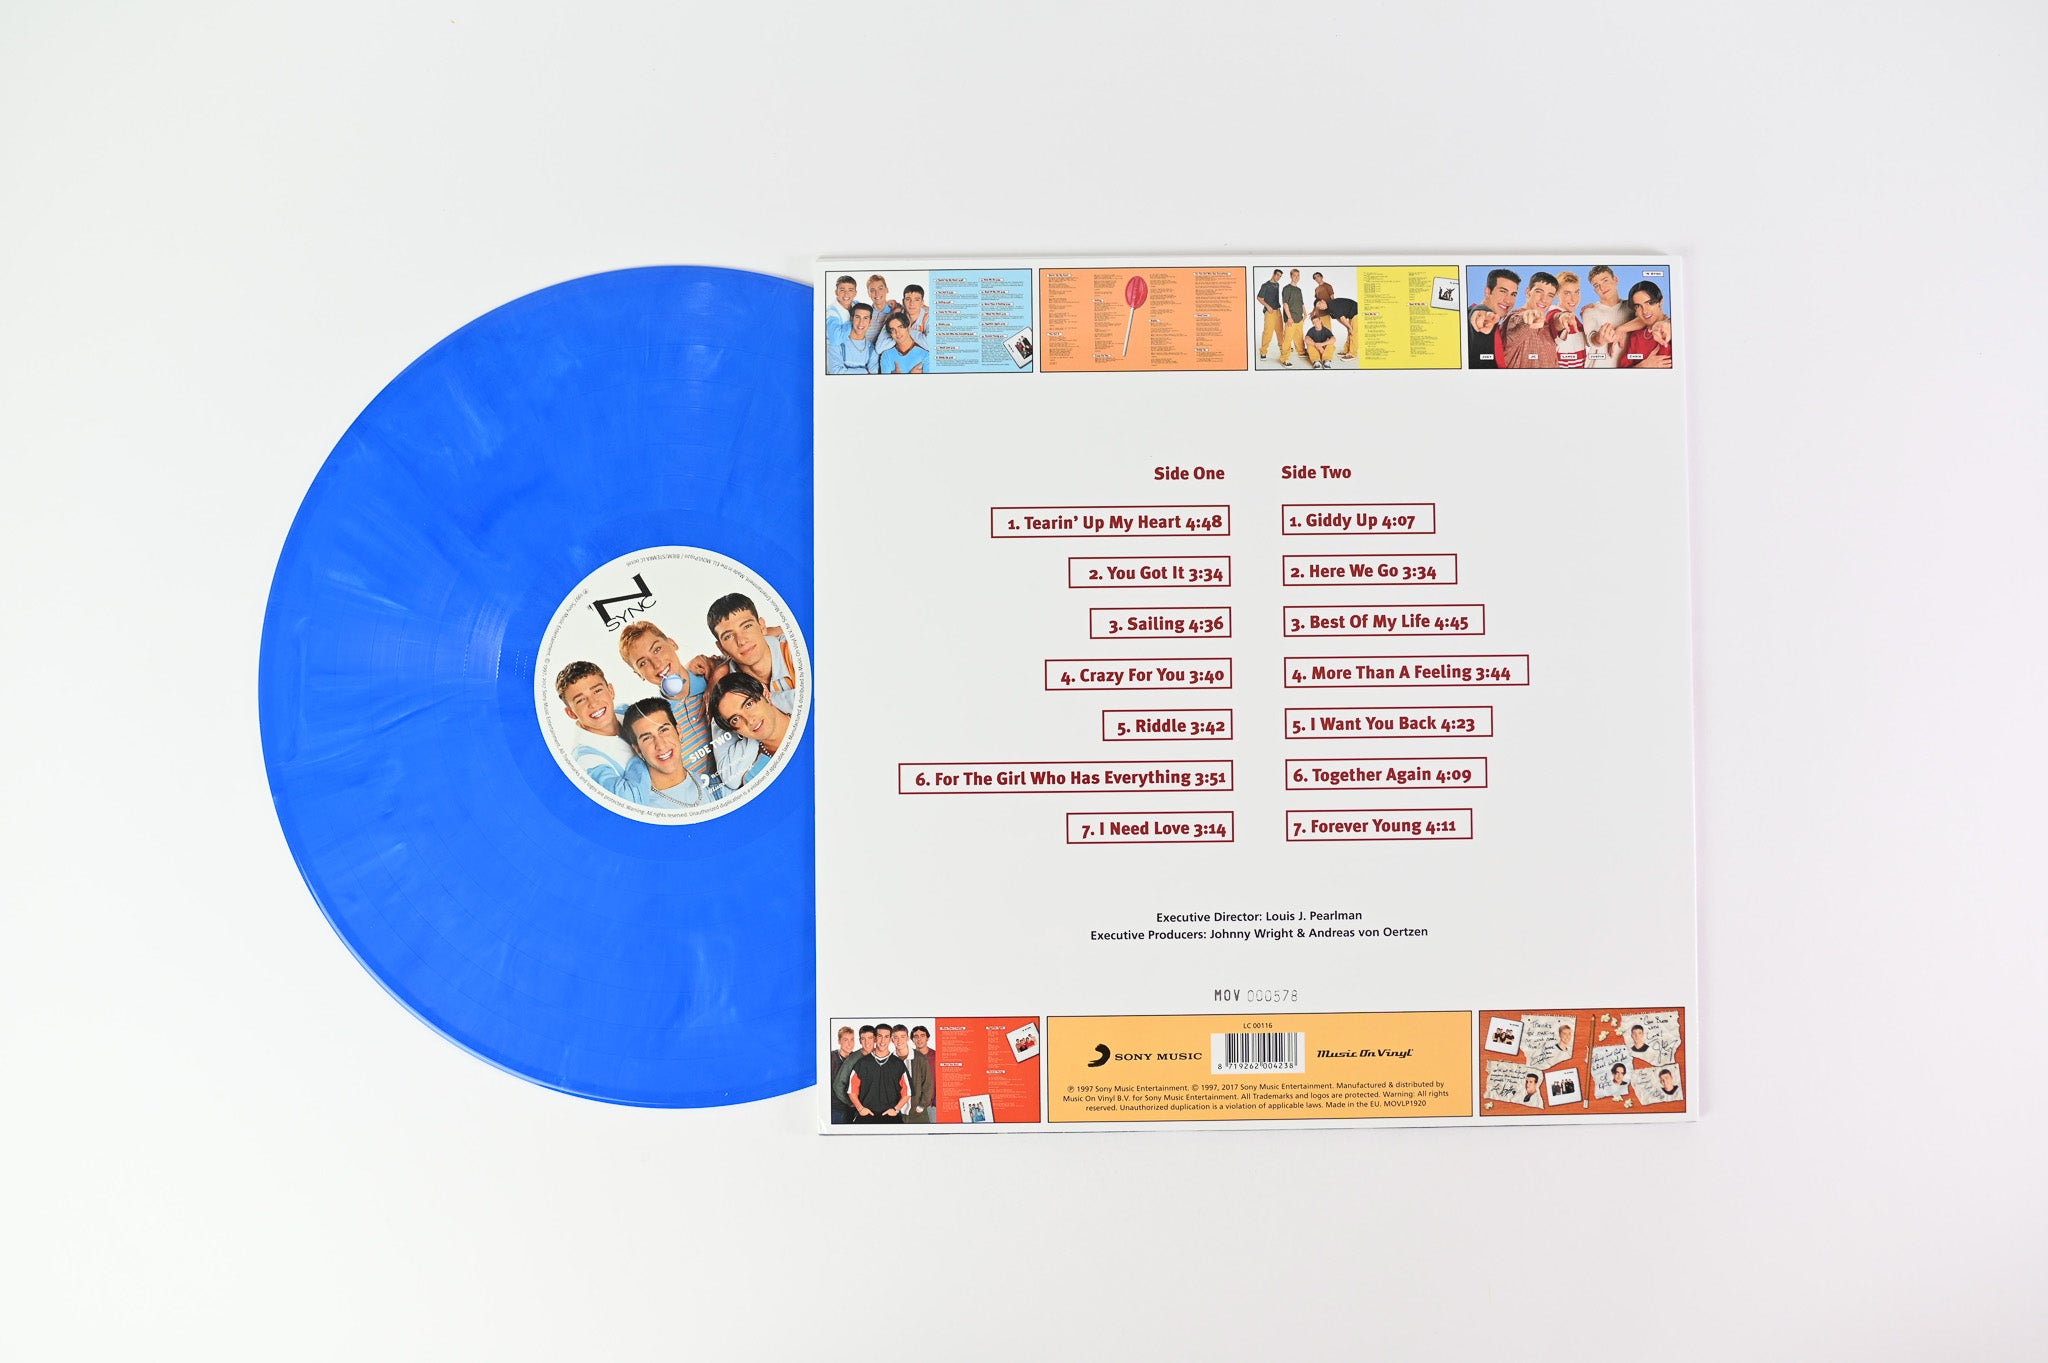 *NSYNC - 'N Sync on Music on Vinyl Ltd Numbered Blue Vinyl Reissue